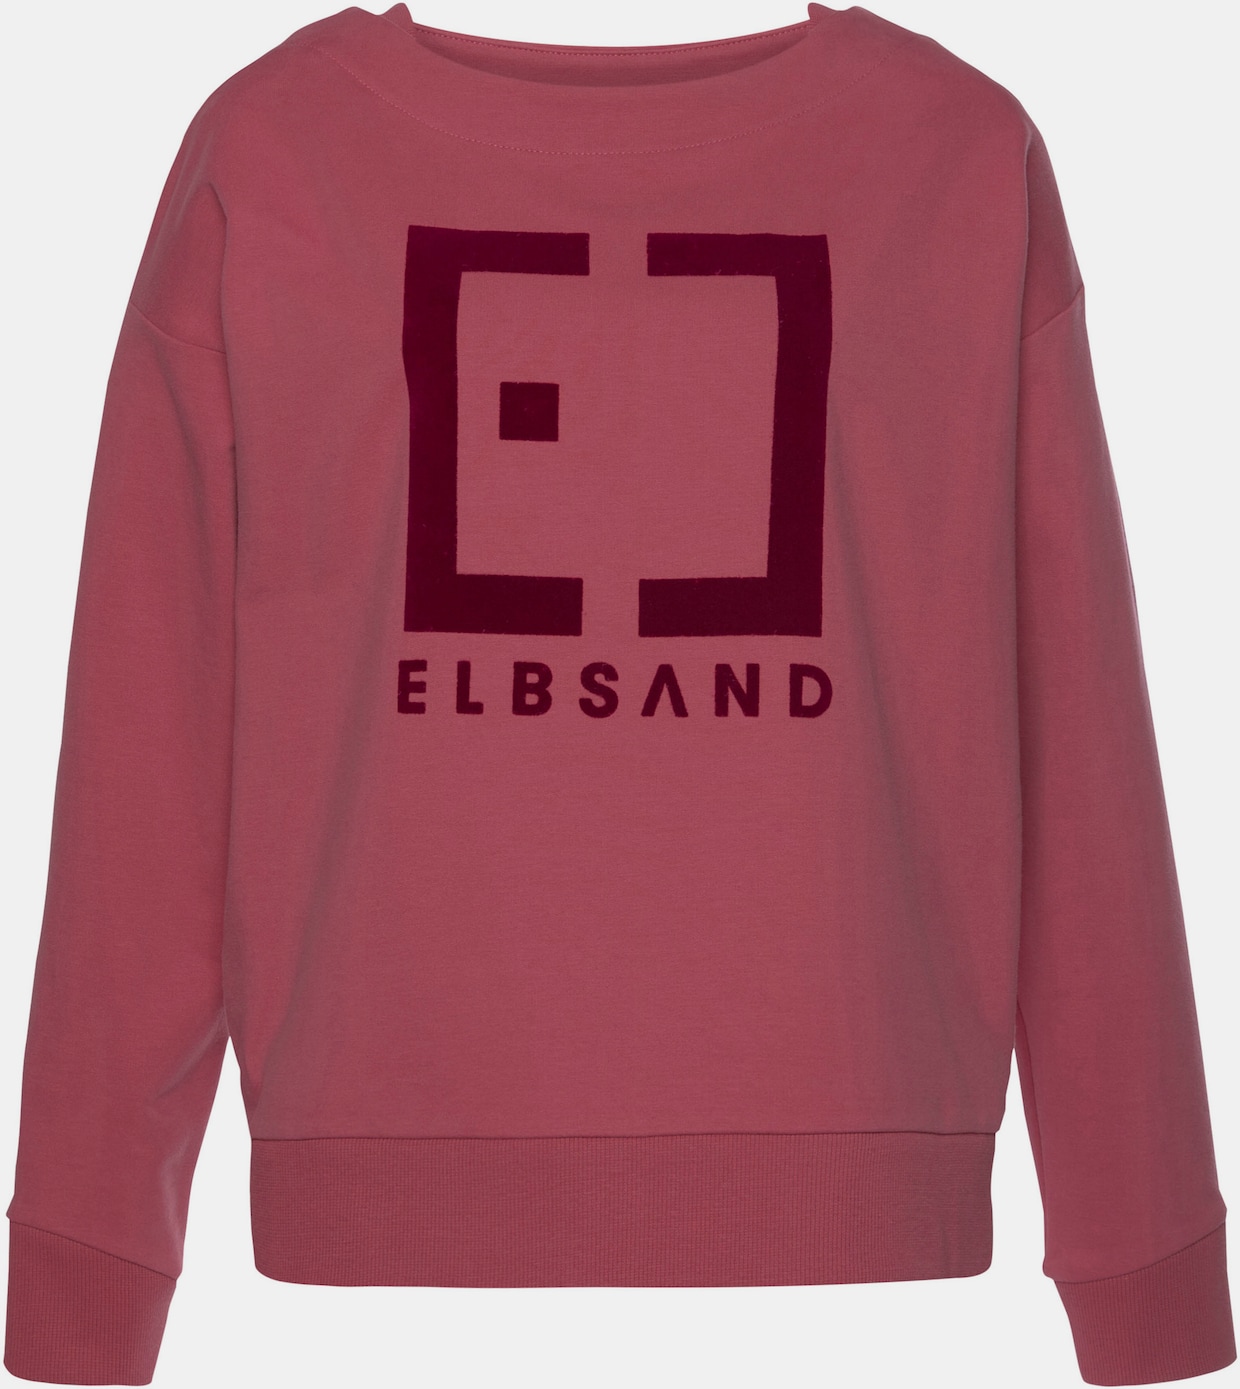 Elbsand Sweatshirt - mauve